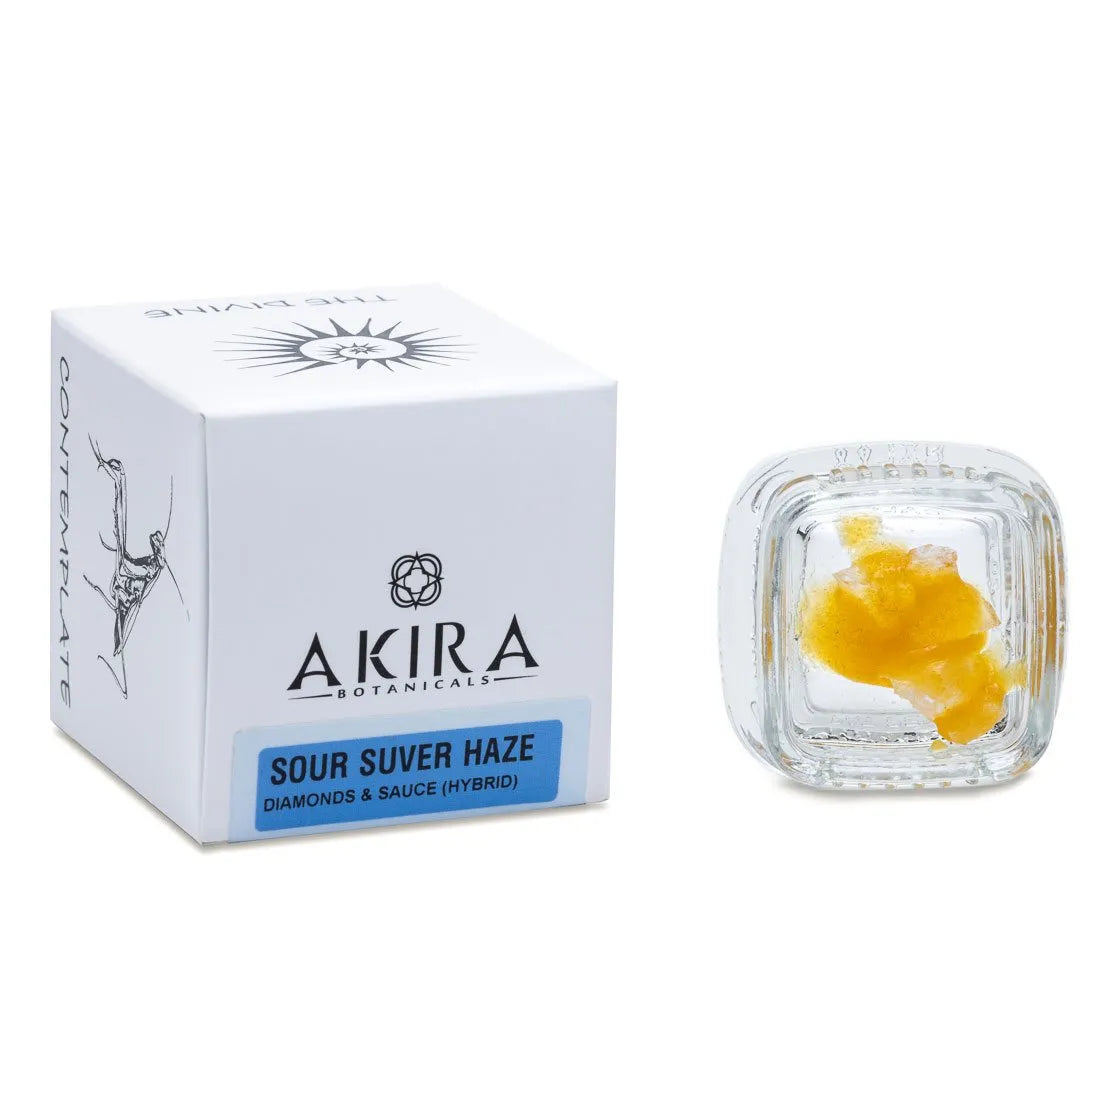 Sour Suver Haze - 1:1 Diamonds & Sauce - Akira Botanicals